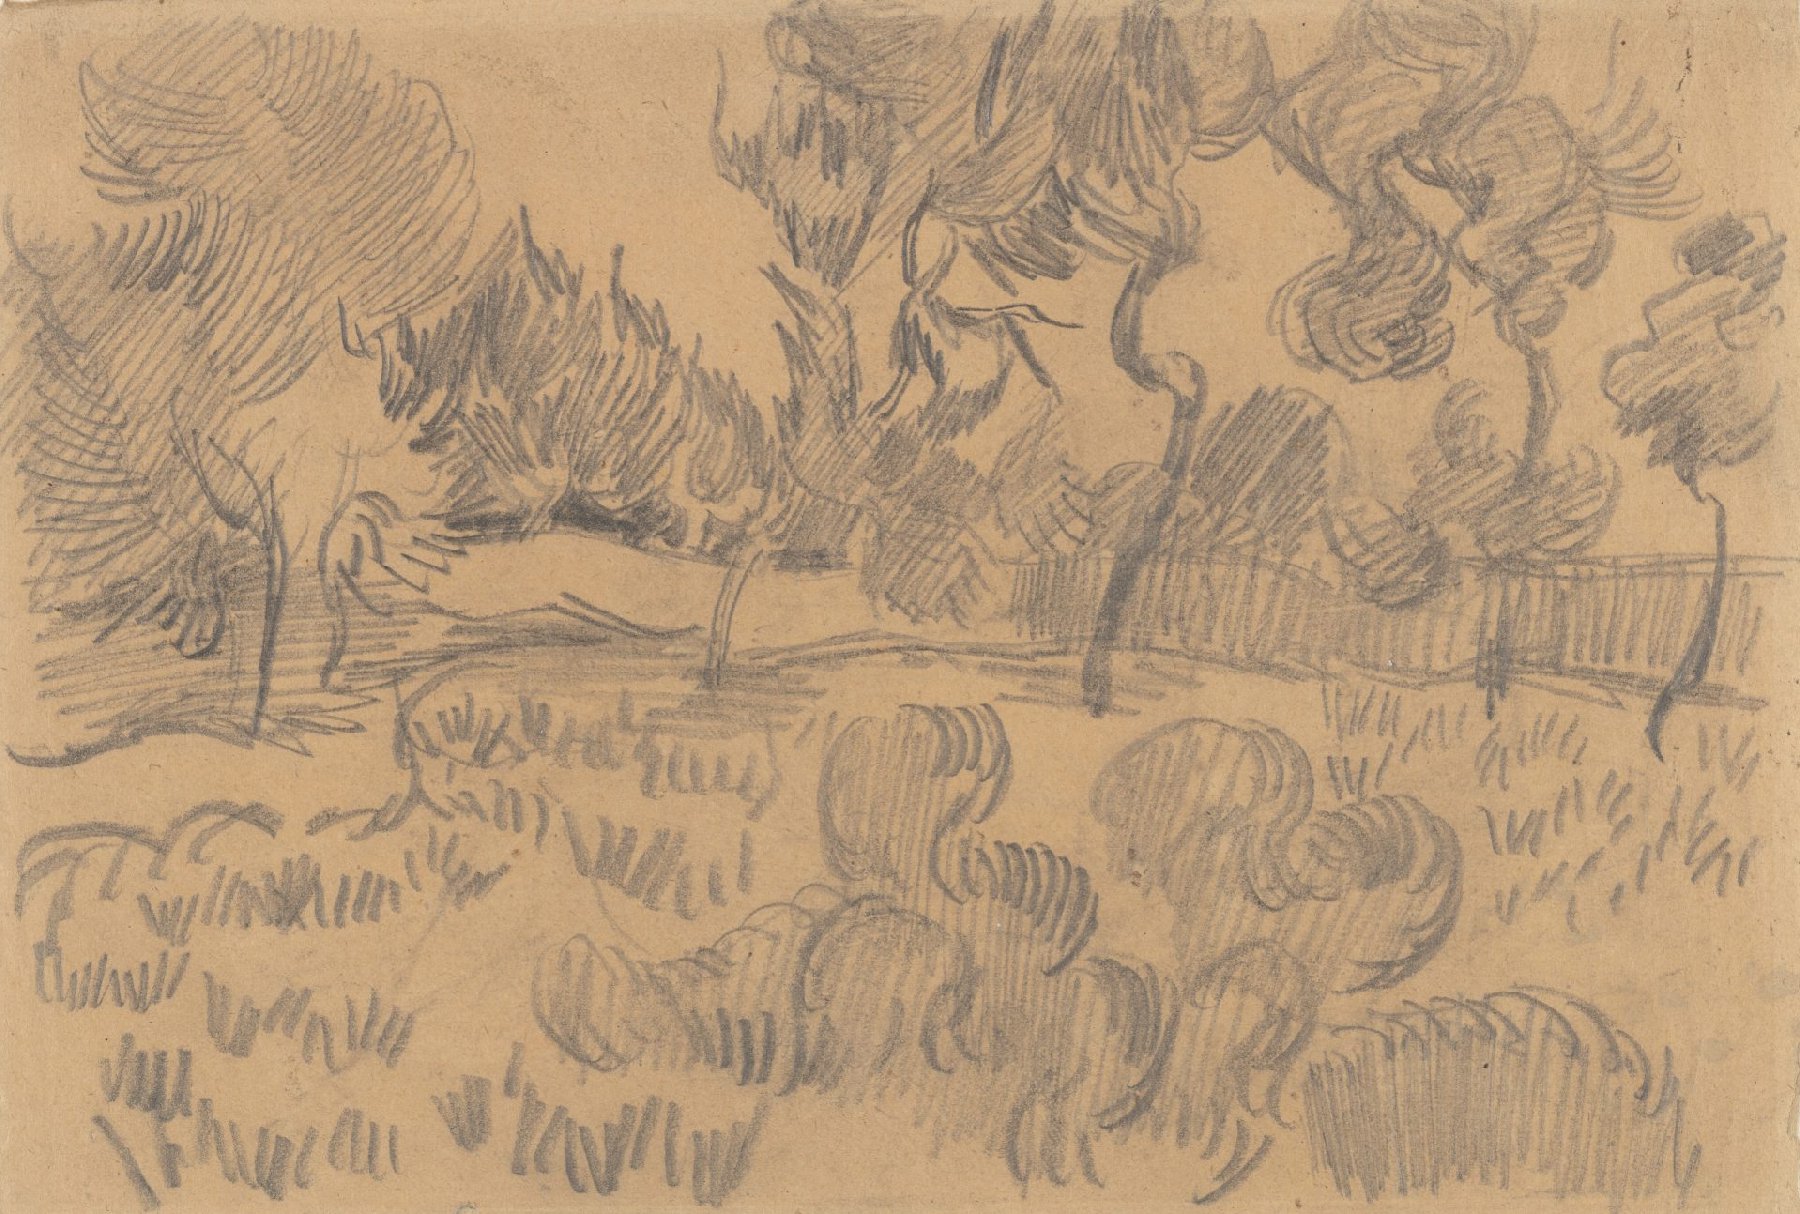 (Pijn)bomen en muur in de tuin van de inrichting Vincent van Gogh (1853 - 1890), Saint-Rémy-de-Provence, oktober 1889